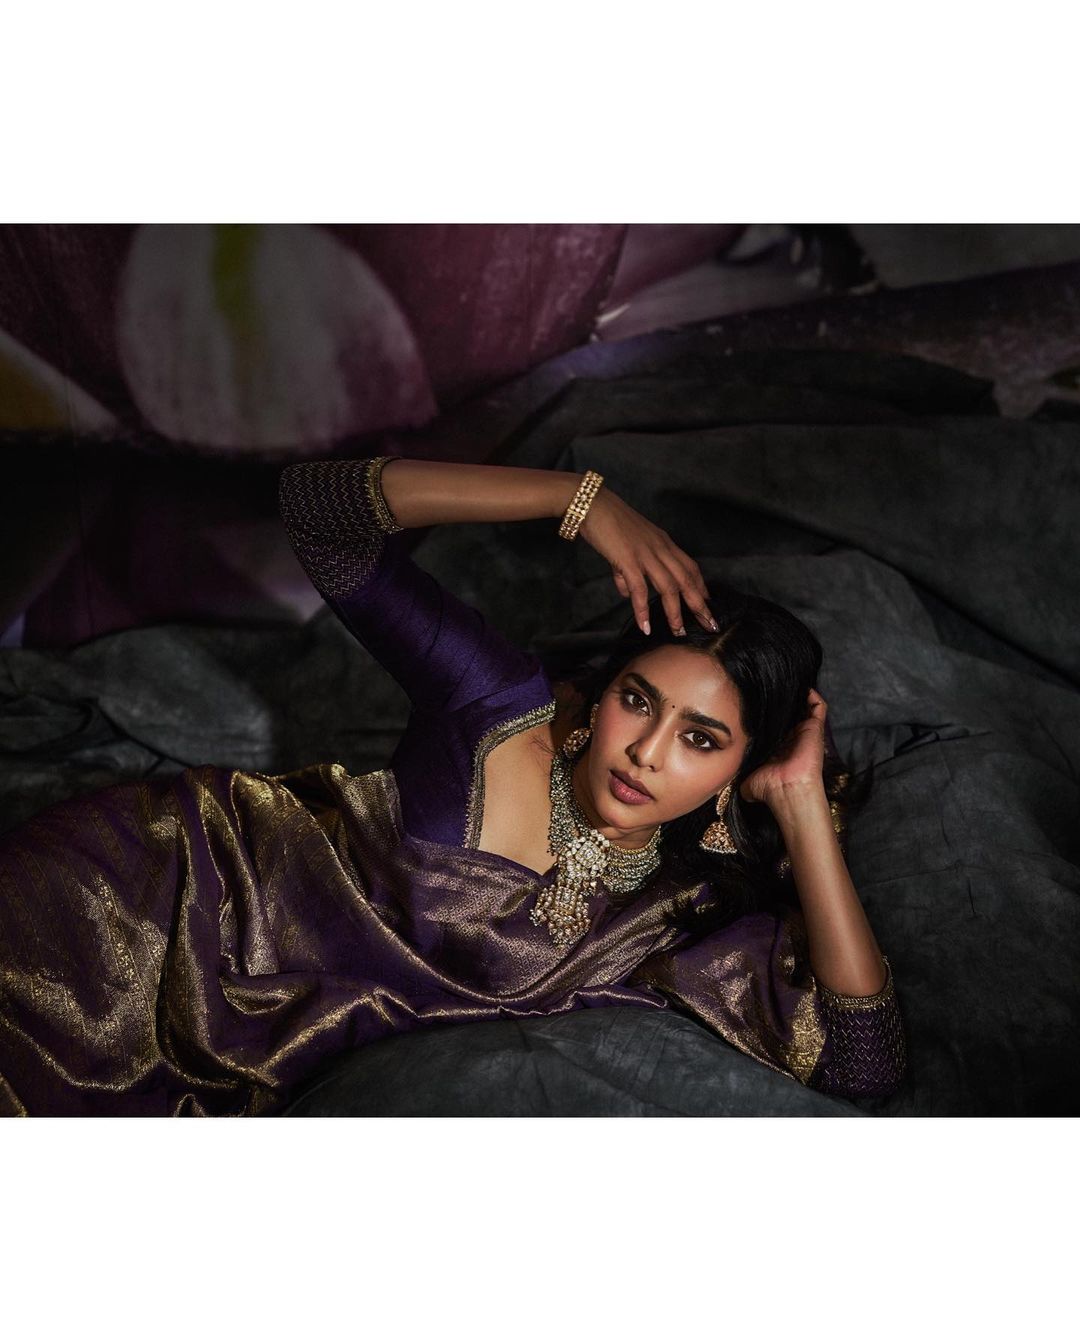  நடிகை ஐஸ்வர்யா லட்சுமி ( Image : Instagram @aishu__ )